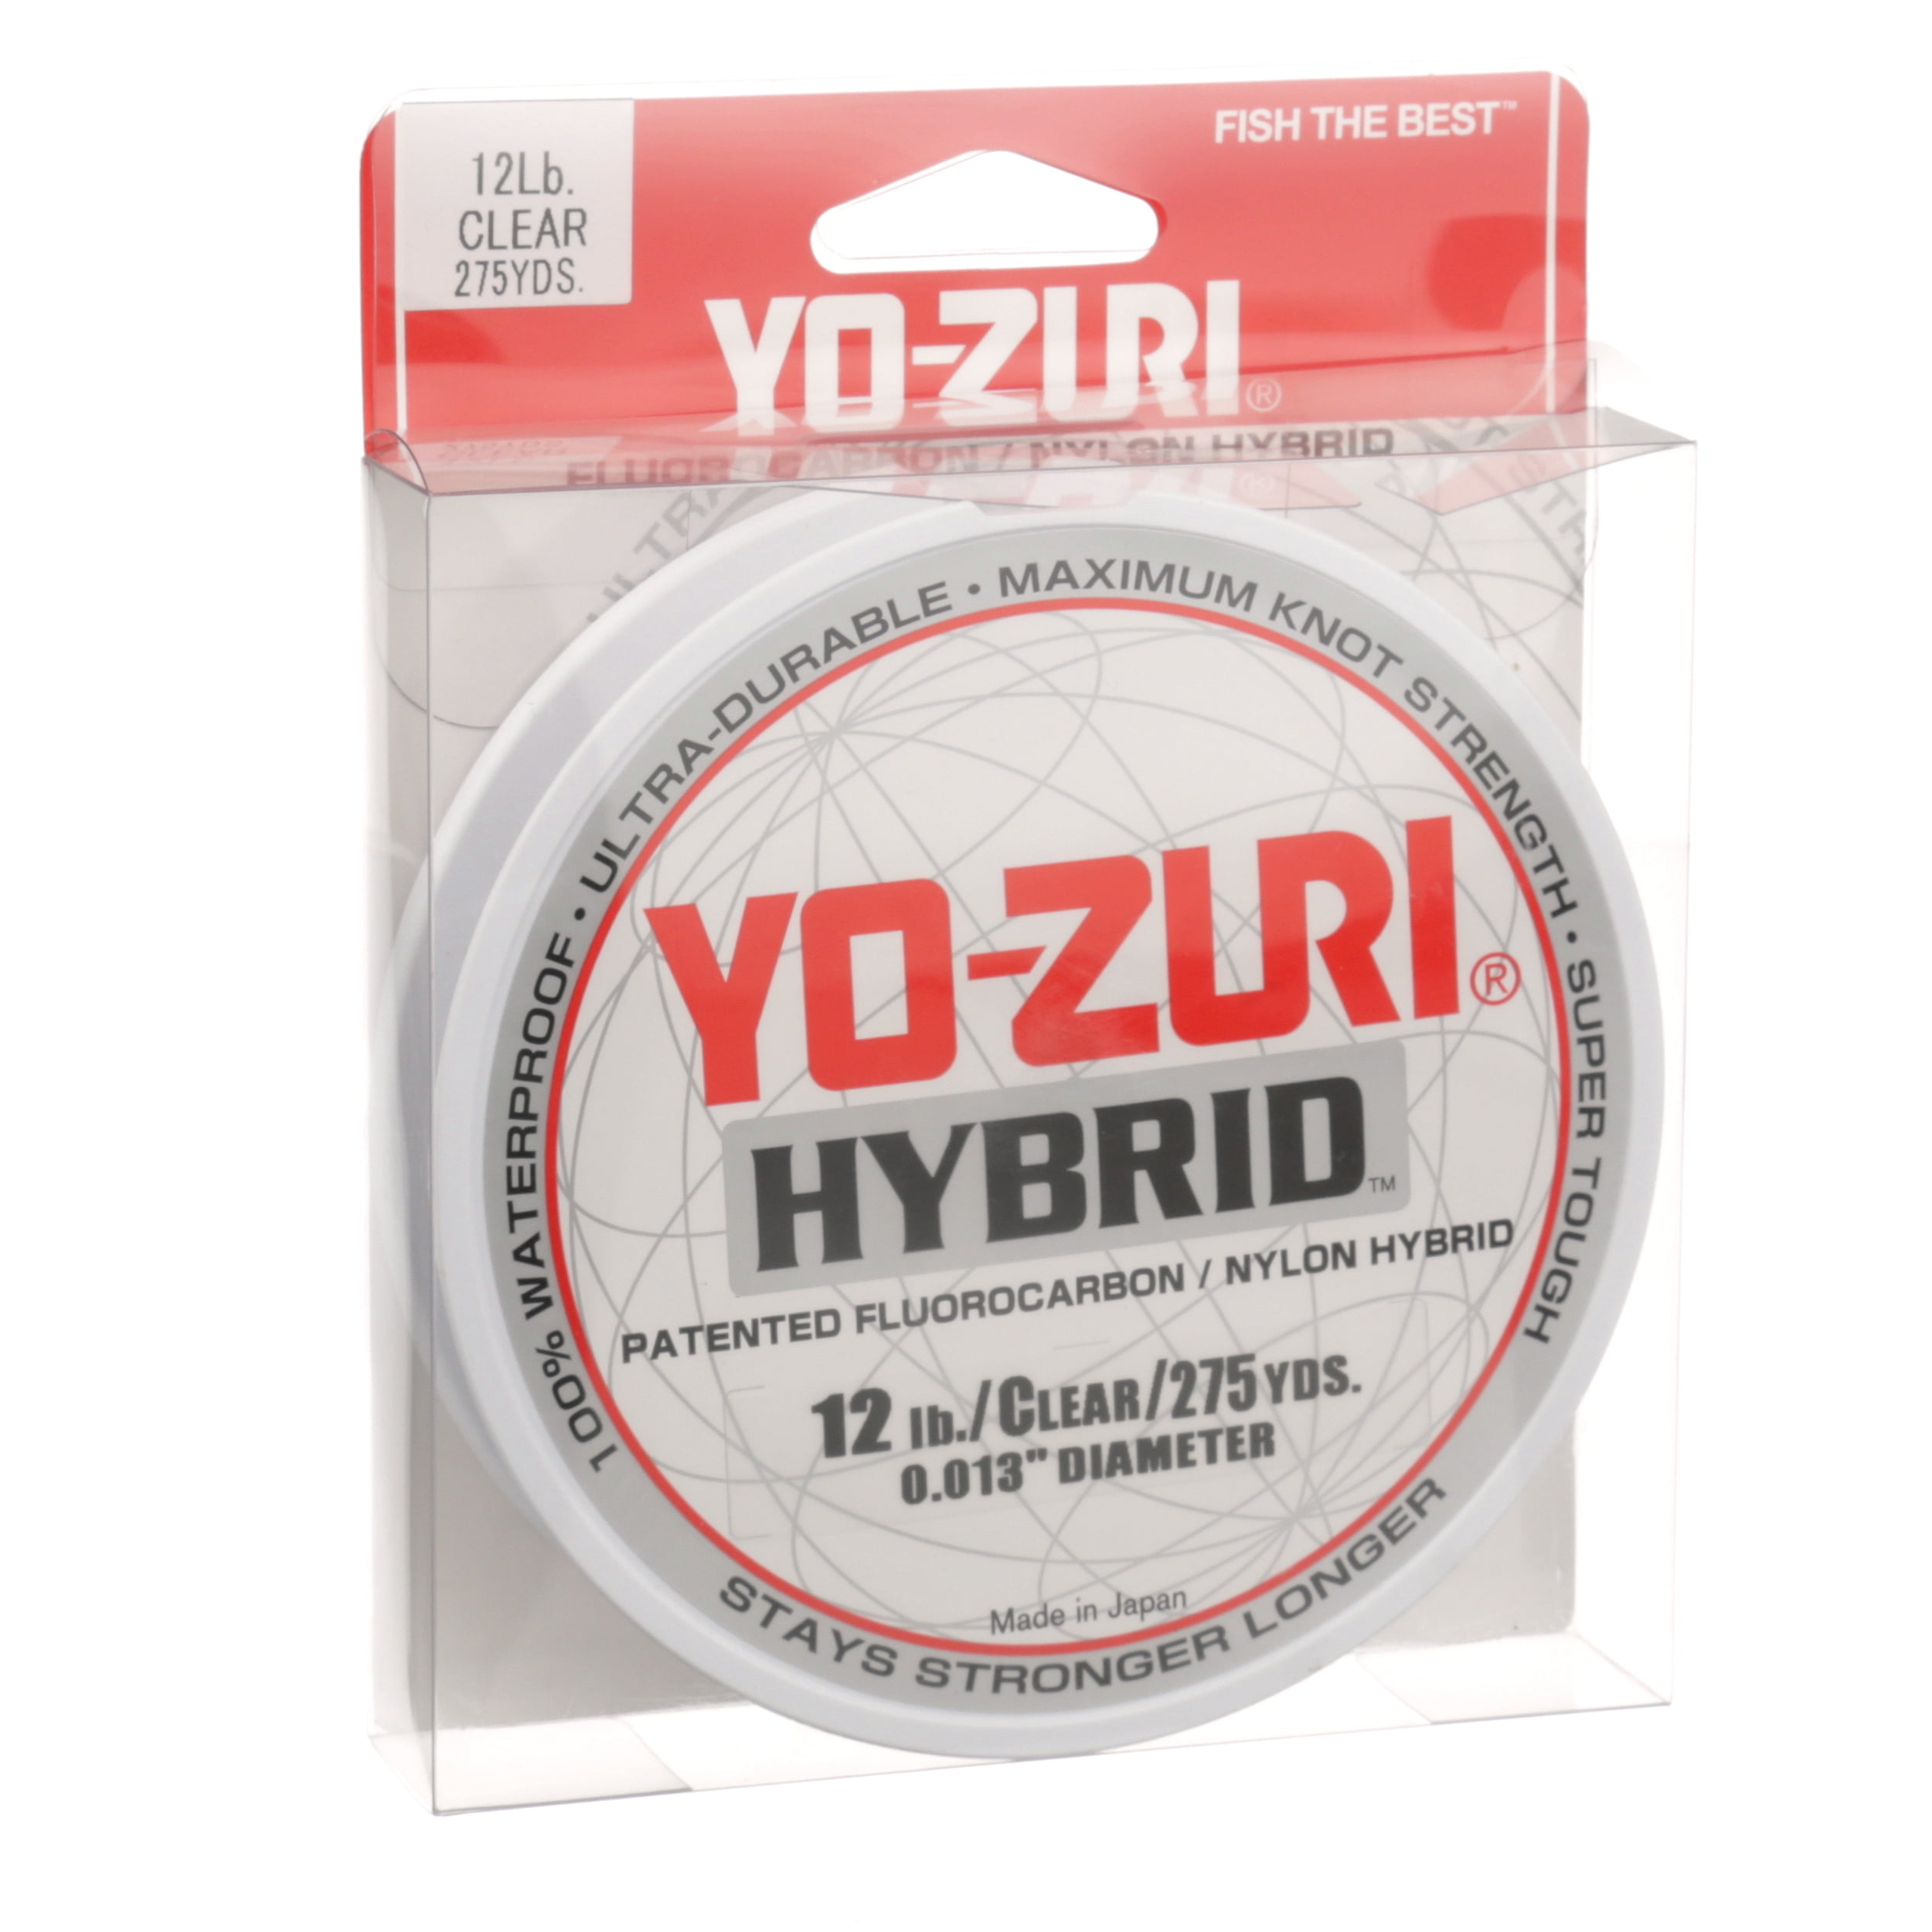 Yo-Zuri Hybrid Clear Line 20lb, 275yd, Flurocarbon/Nylon Hybrid 